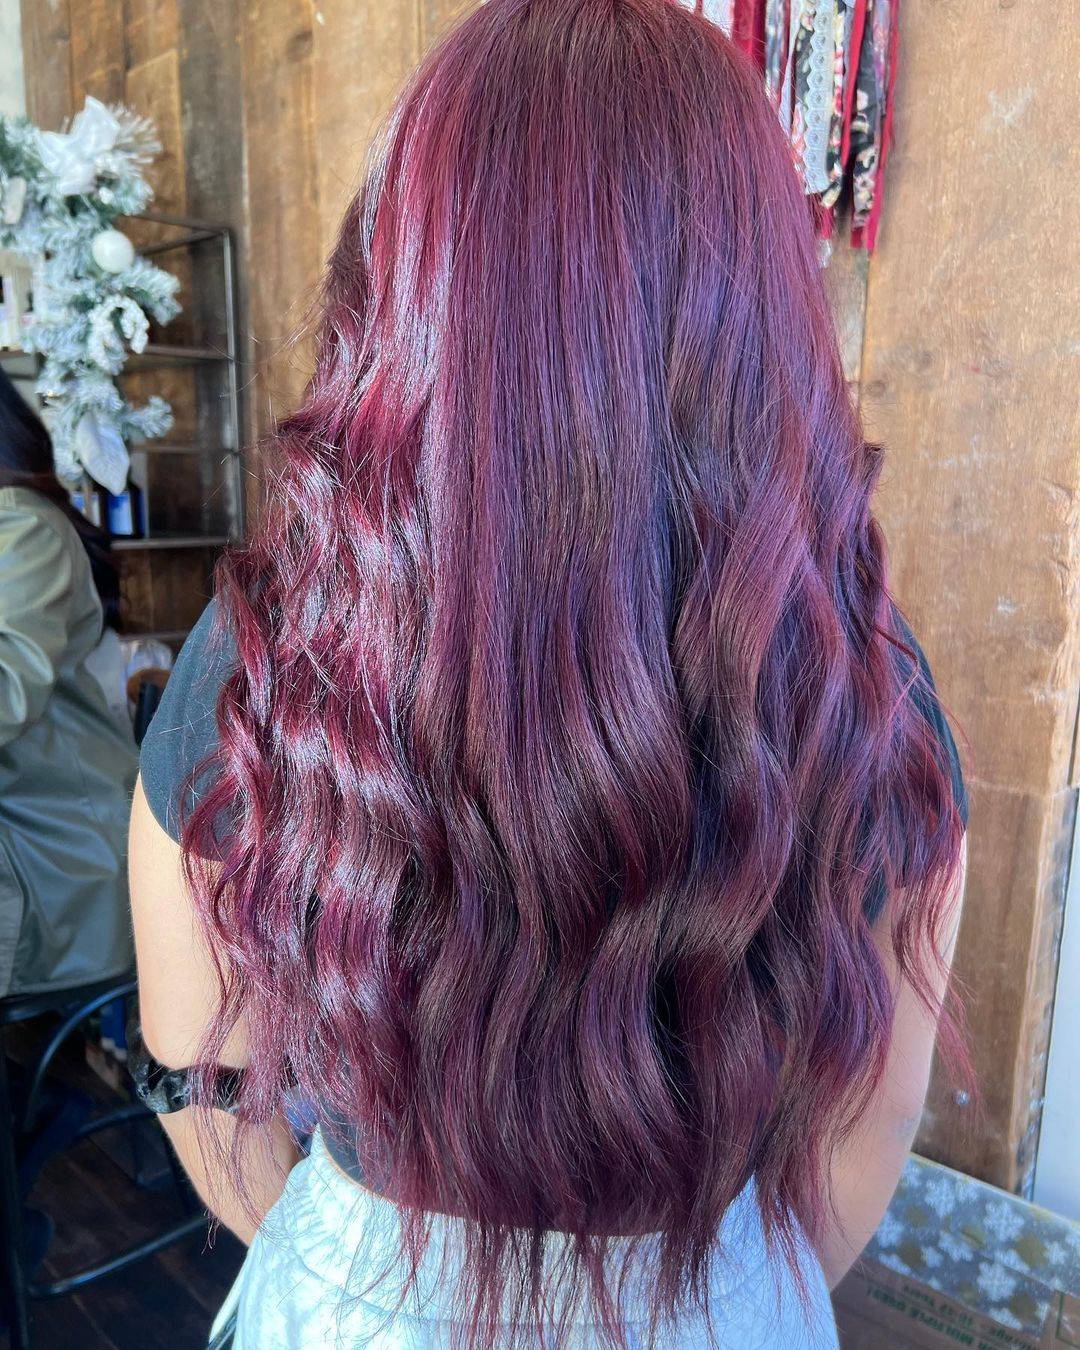 Burgundy hair color 115 burgundy hair color | burgundy hair color for women | burgundy hair color highlights Burgundy Hair Color